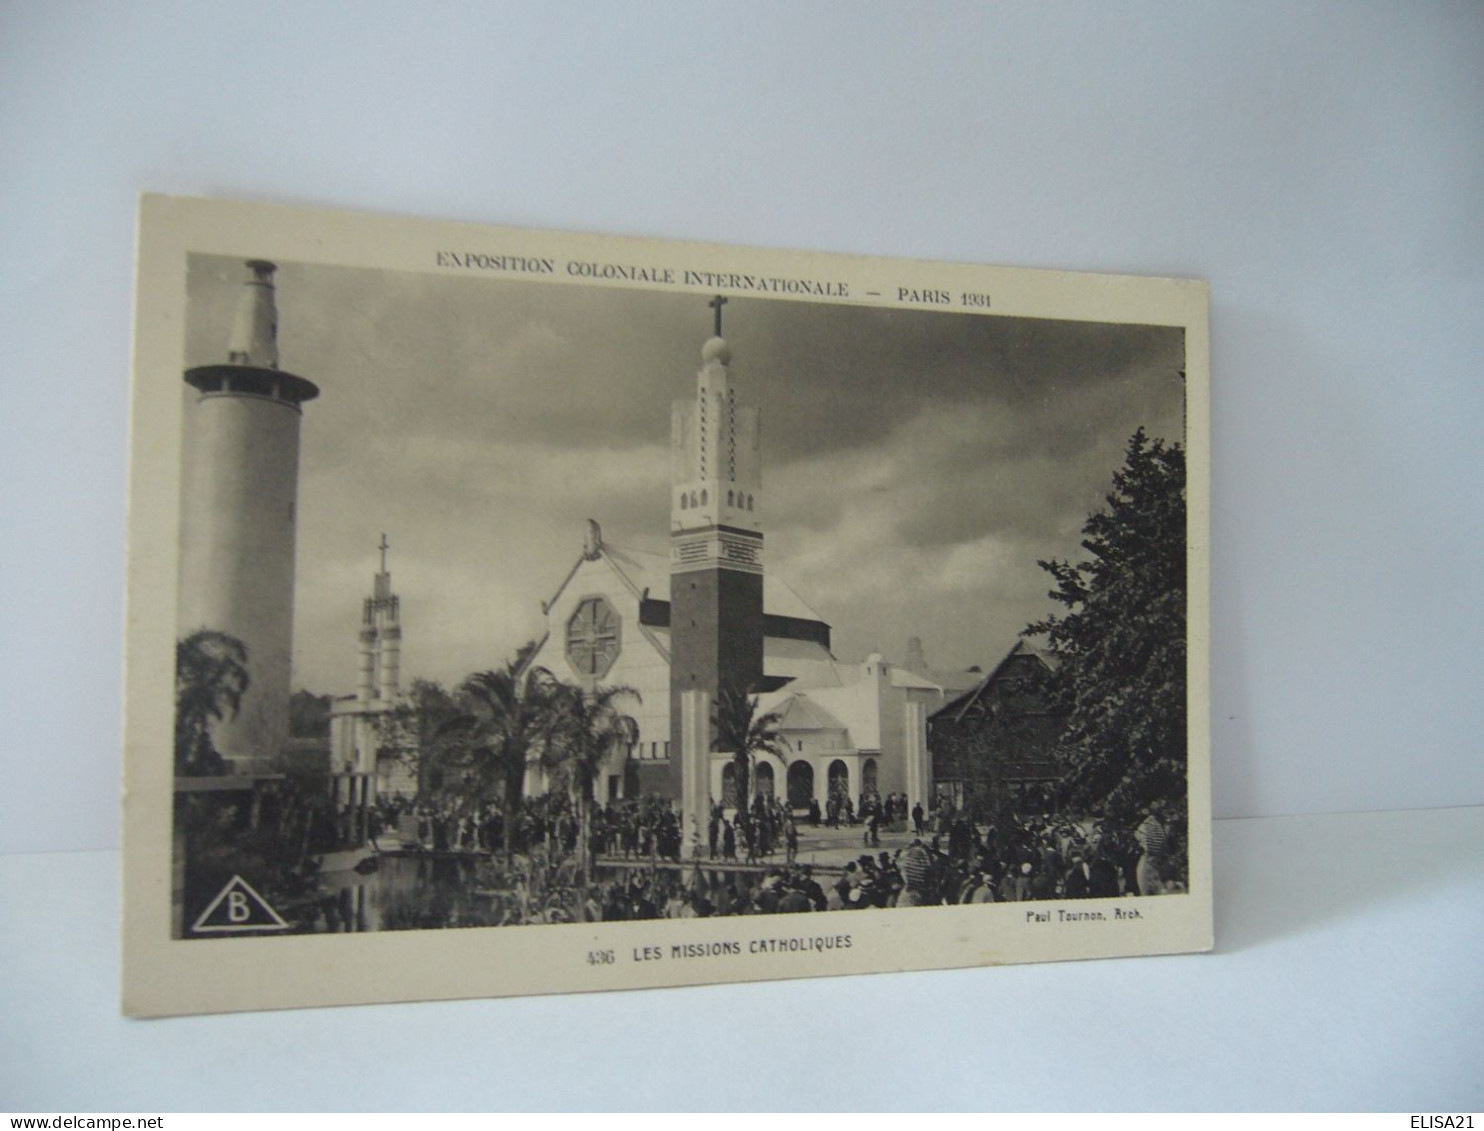 EXPOSITION COLONIALE INTERNATIONALE PARIS 1931 PARIS LES MISSIONS CATHOLIQUES CPA - Expositions